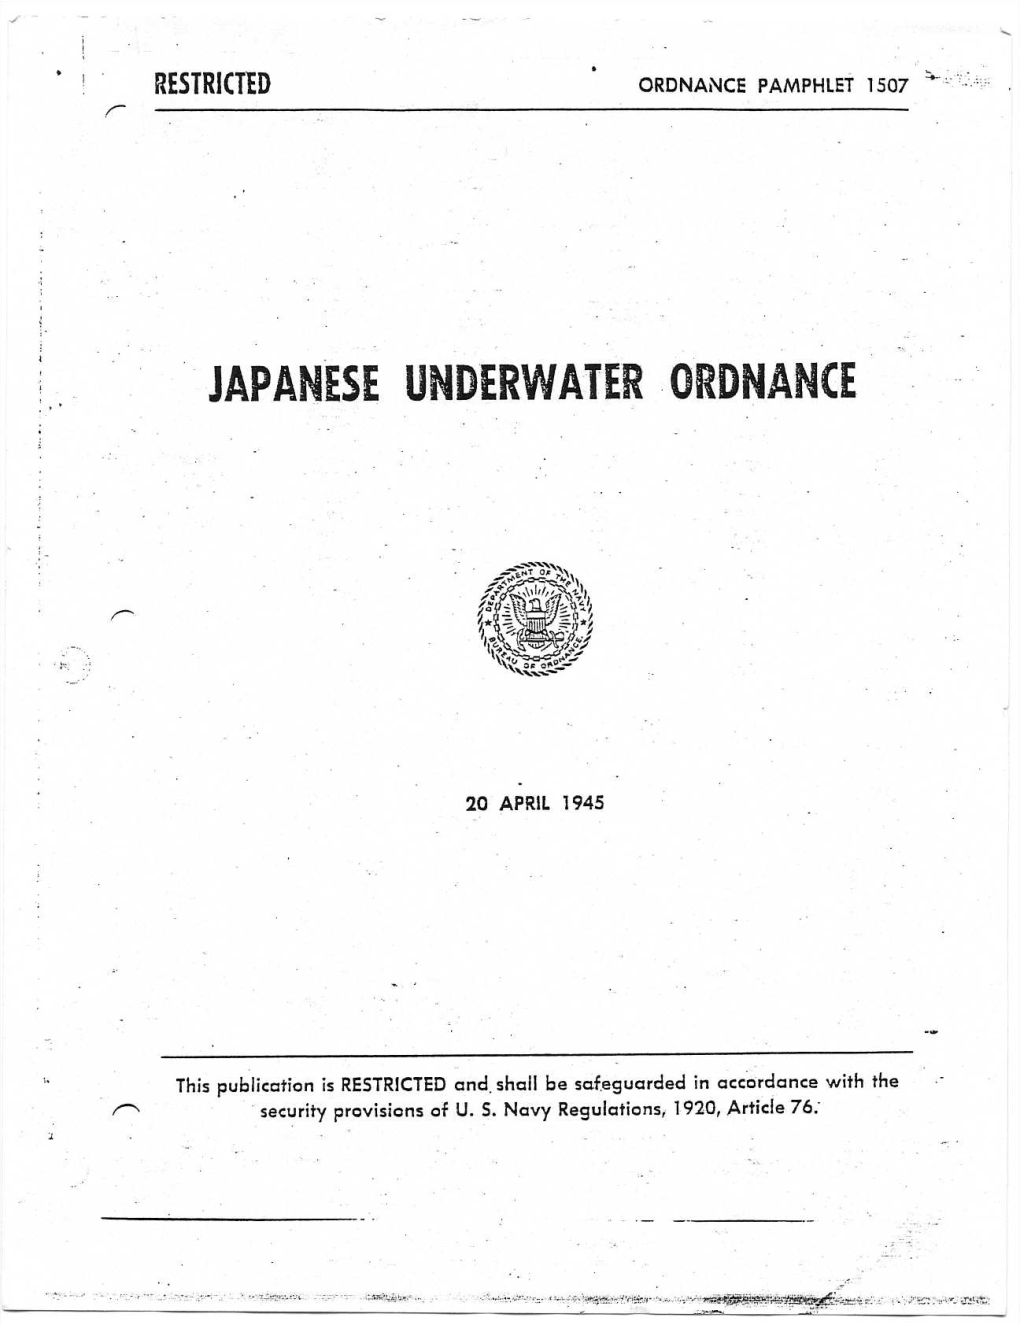 OP 1507, Japanese Underwater Ordnance